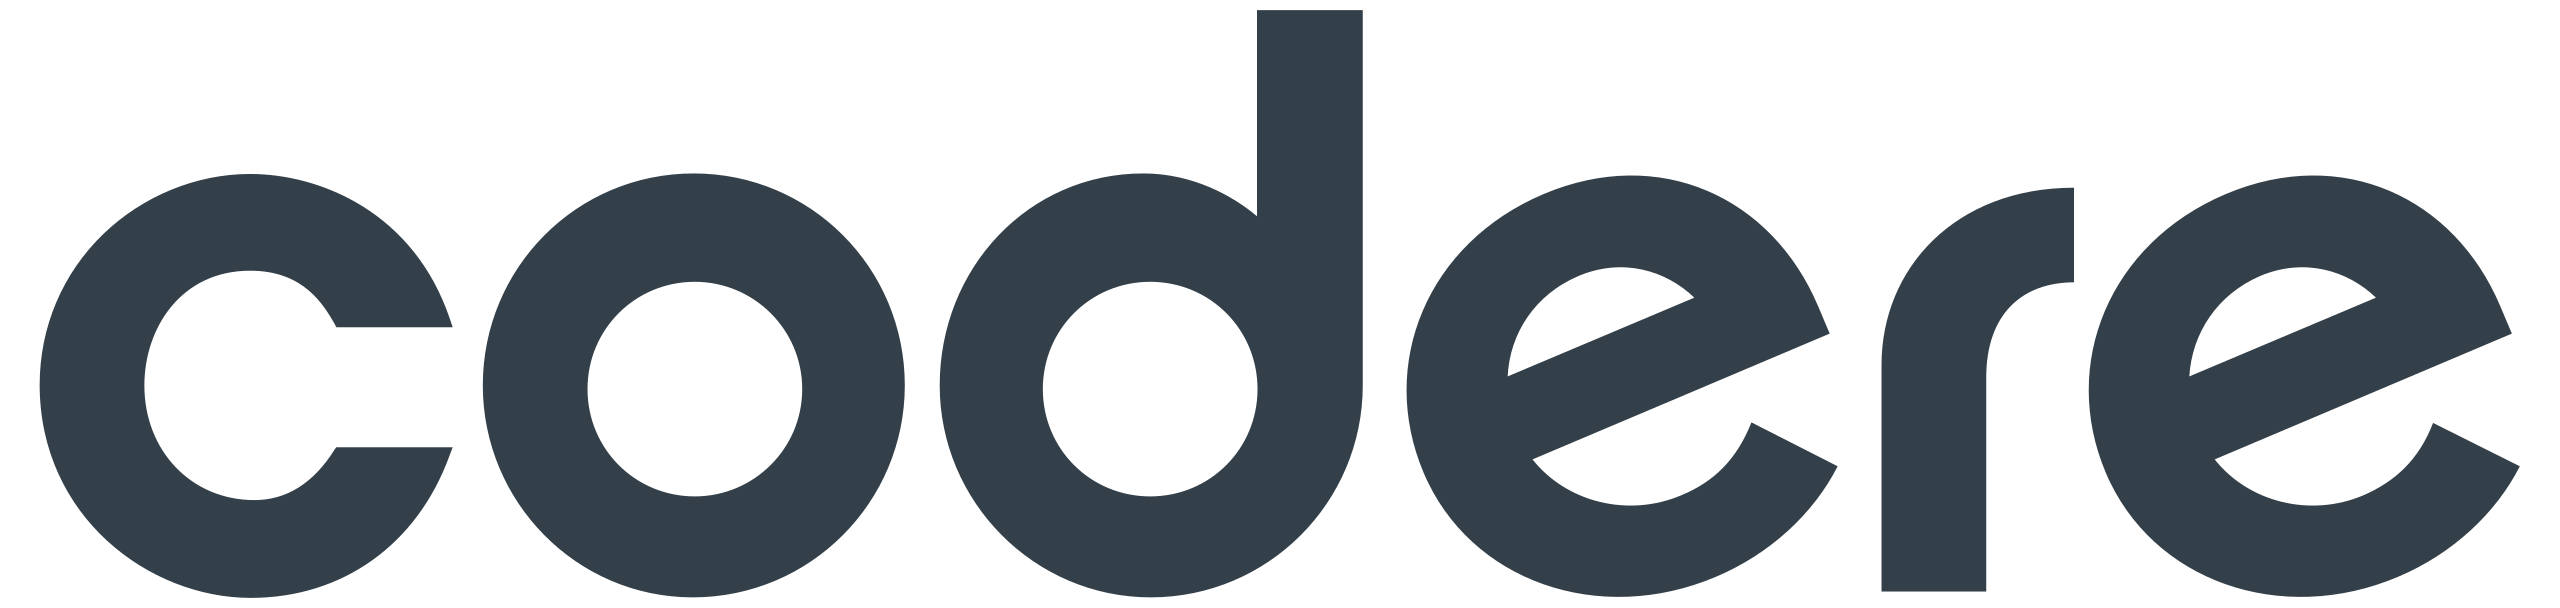 Логотип Codere